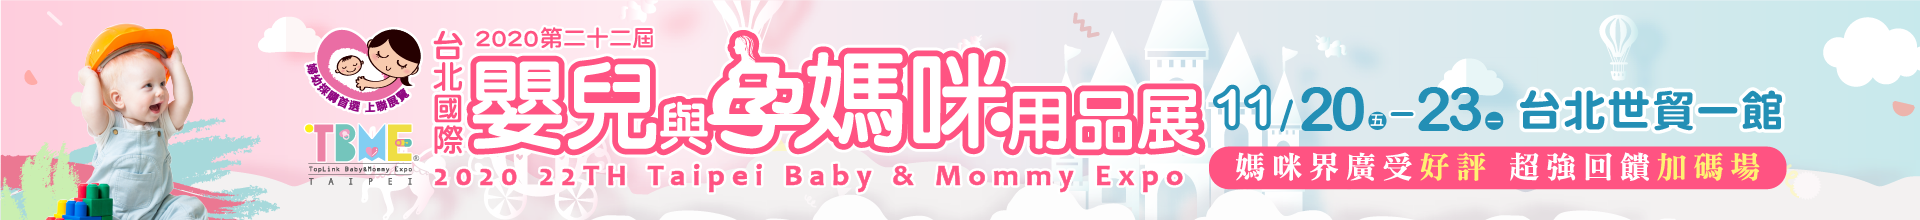 2020台北國際嬰兒與孕媽咪用品展 (秋冬季)